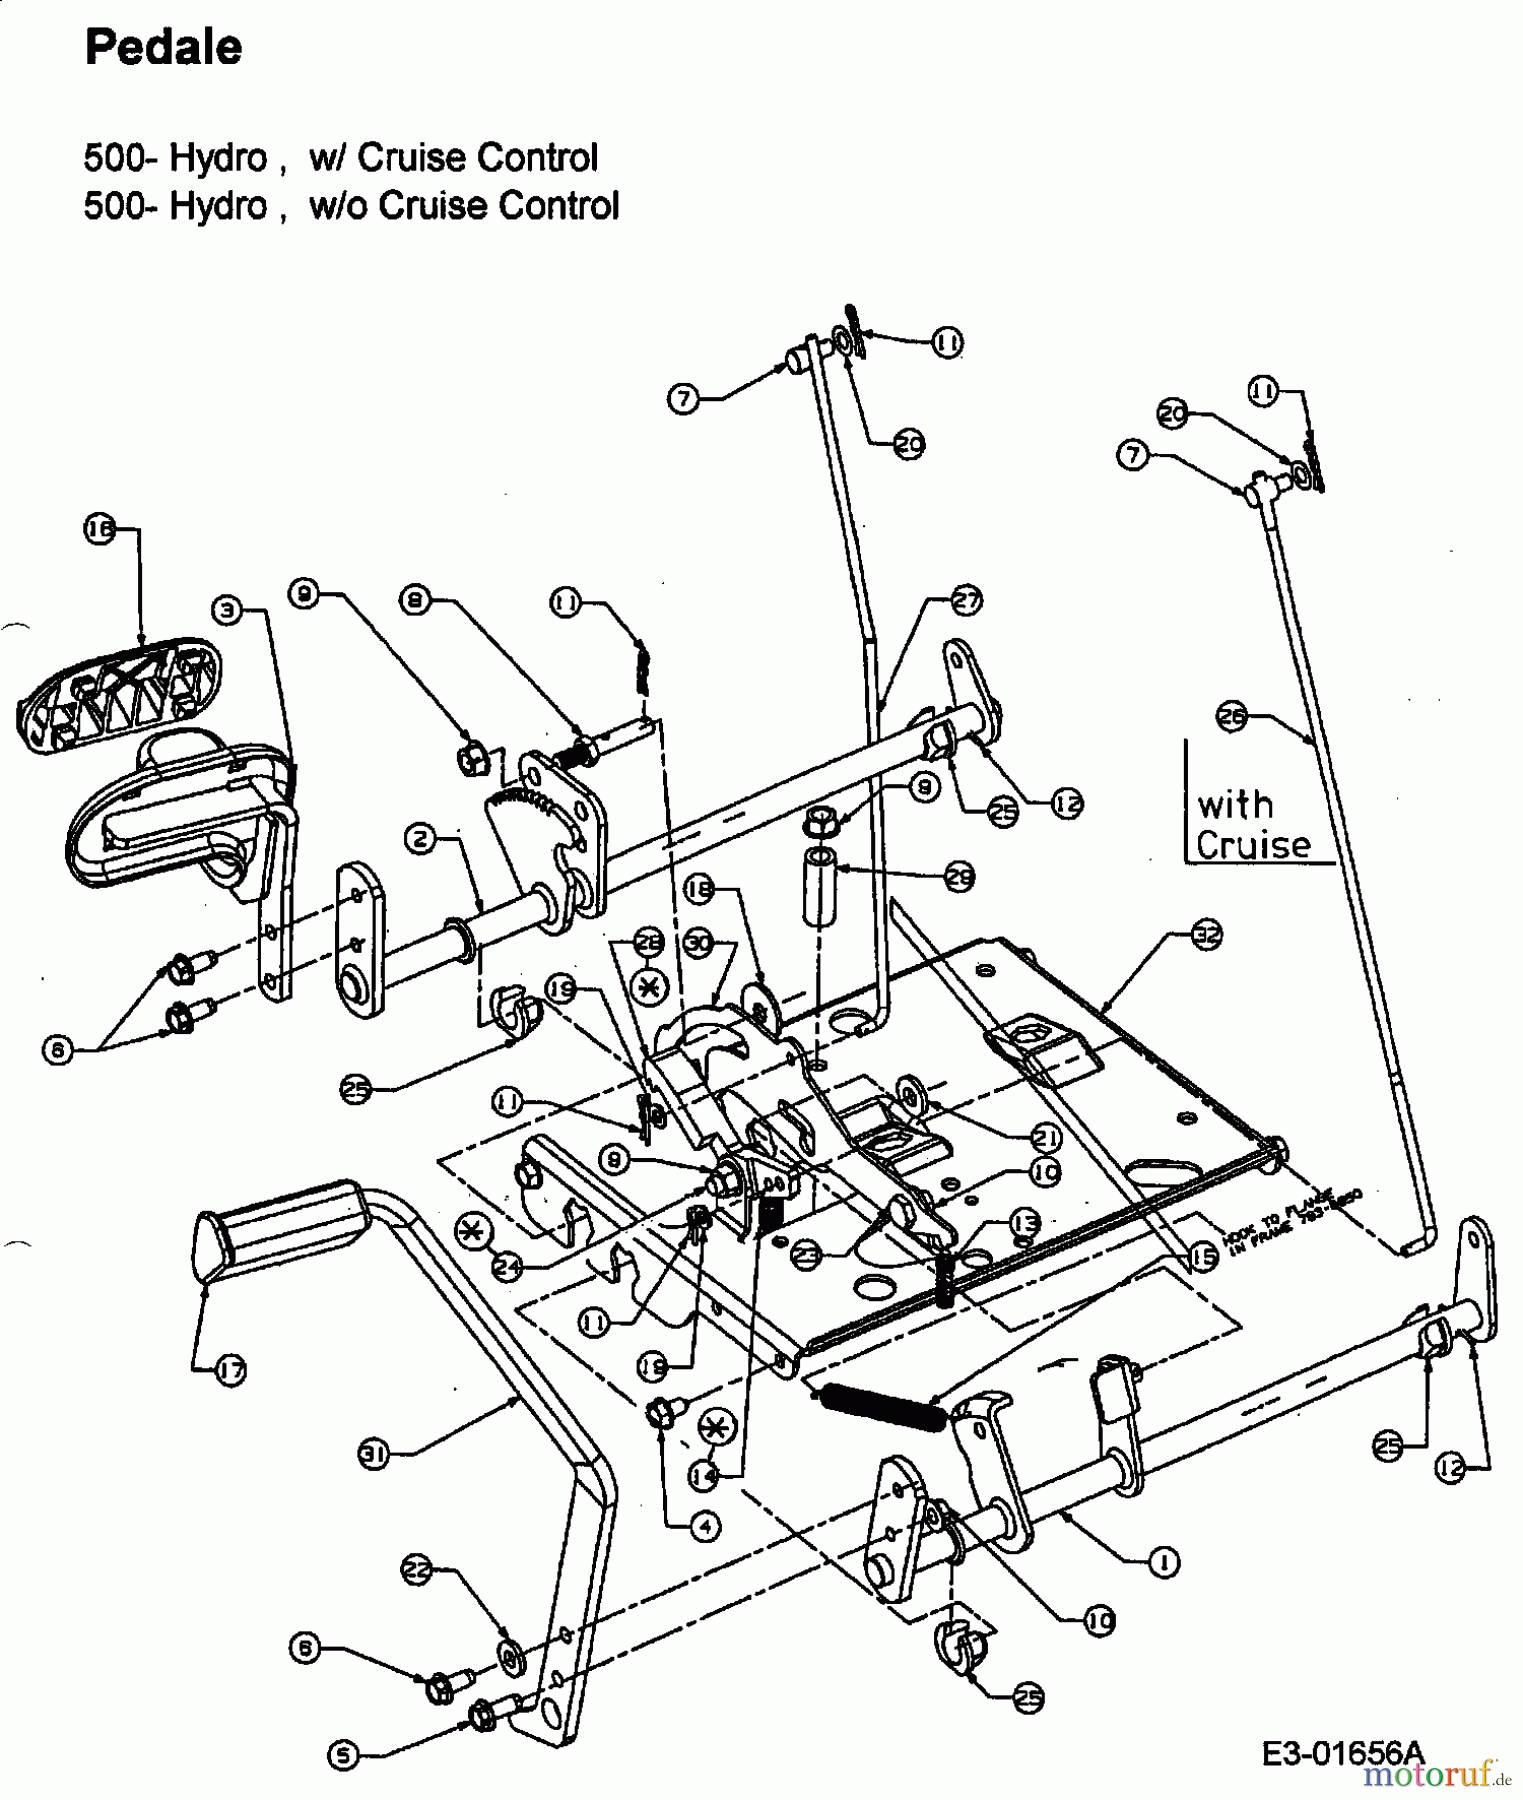  Efco Lawn tractors Formula 107 H 13BA519G637  (2003) Pedals